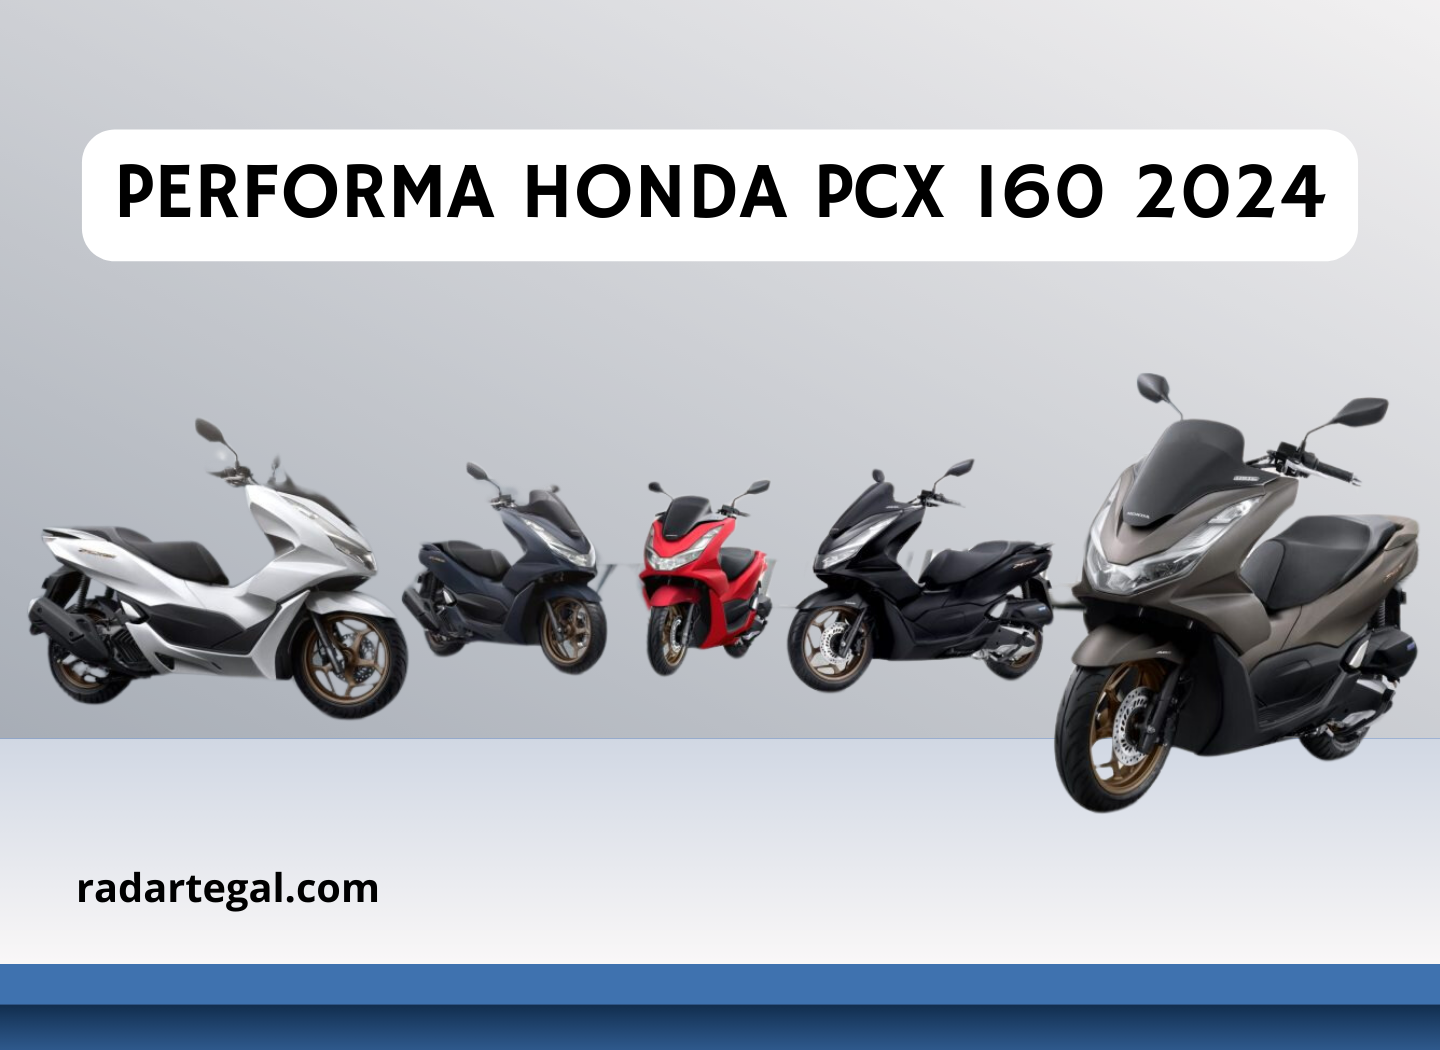 Cek Keistimewaan Performa Honda PCX 160 2024 yang Siap Melawan Yamaha NMAX 